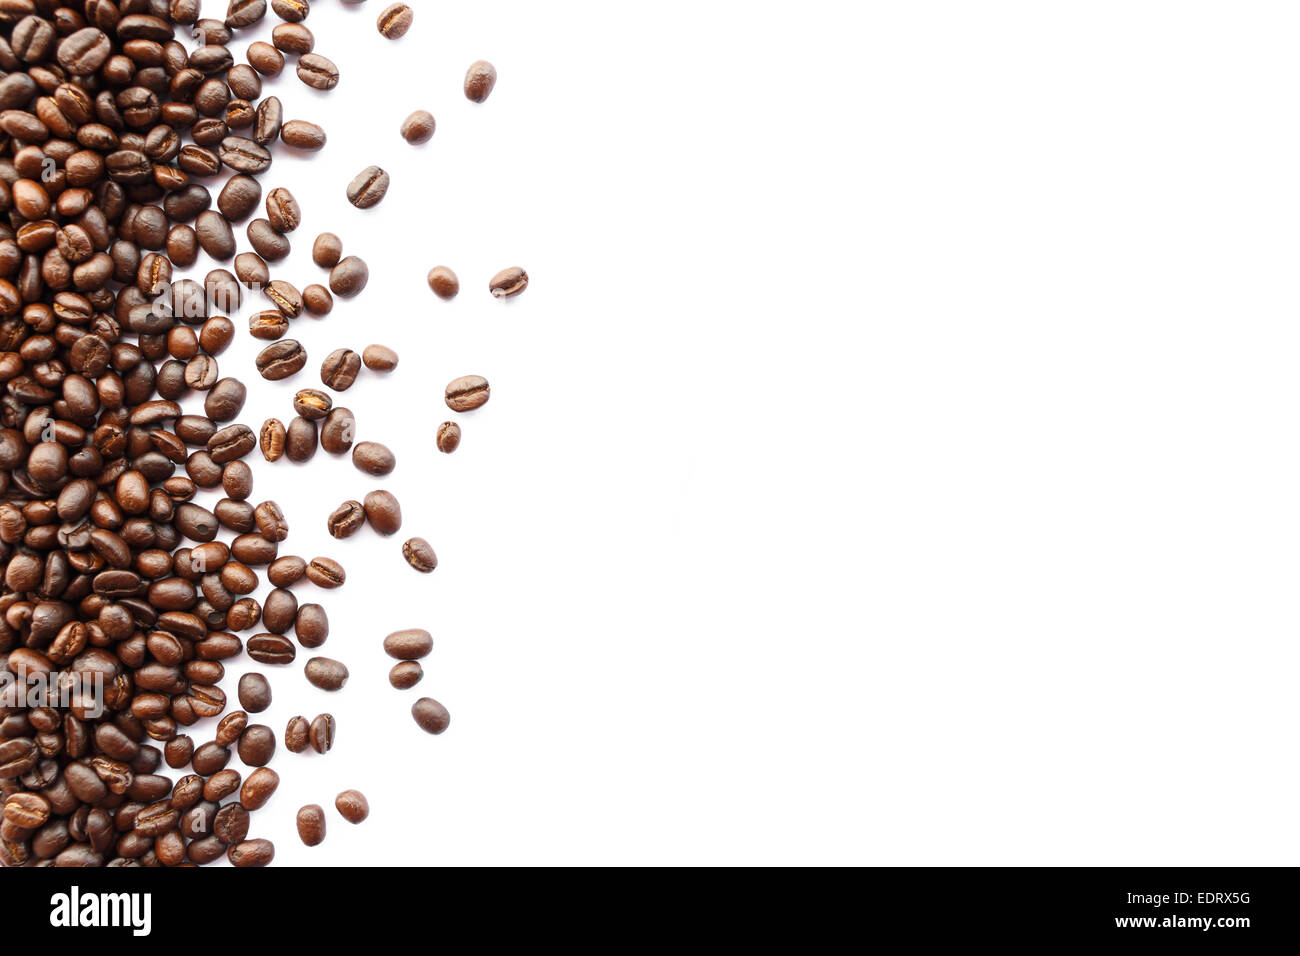 Los granos de café en el borde de imagen con área en blanco para rellenar texto Foto de stock